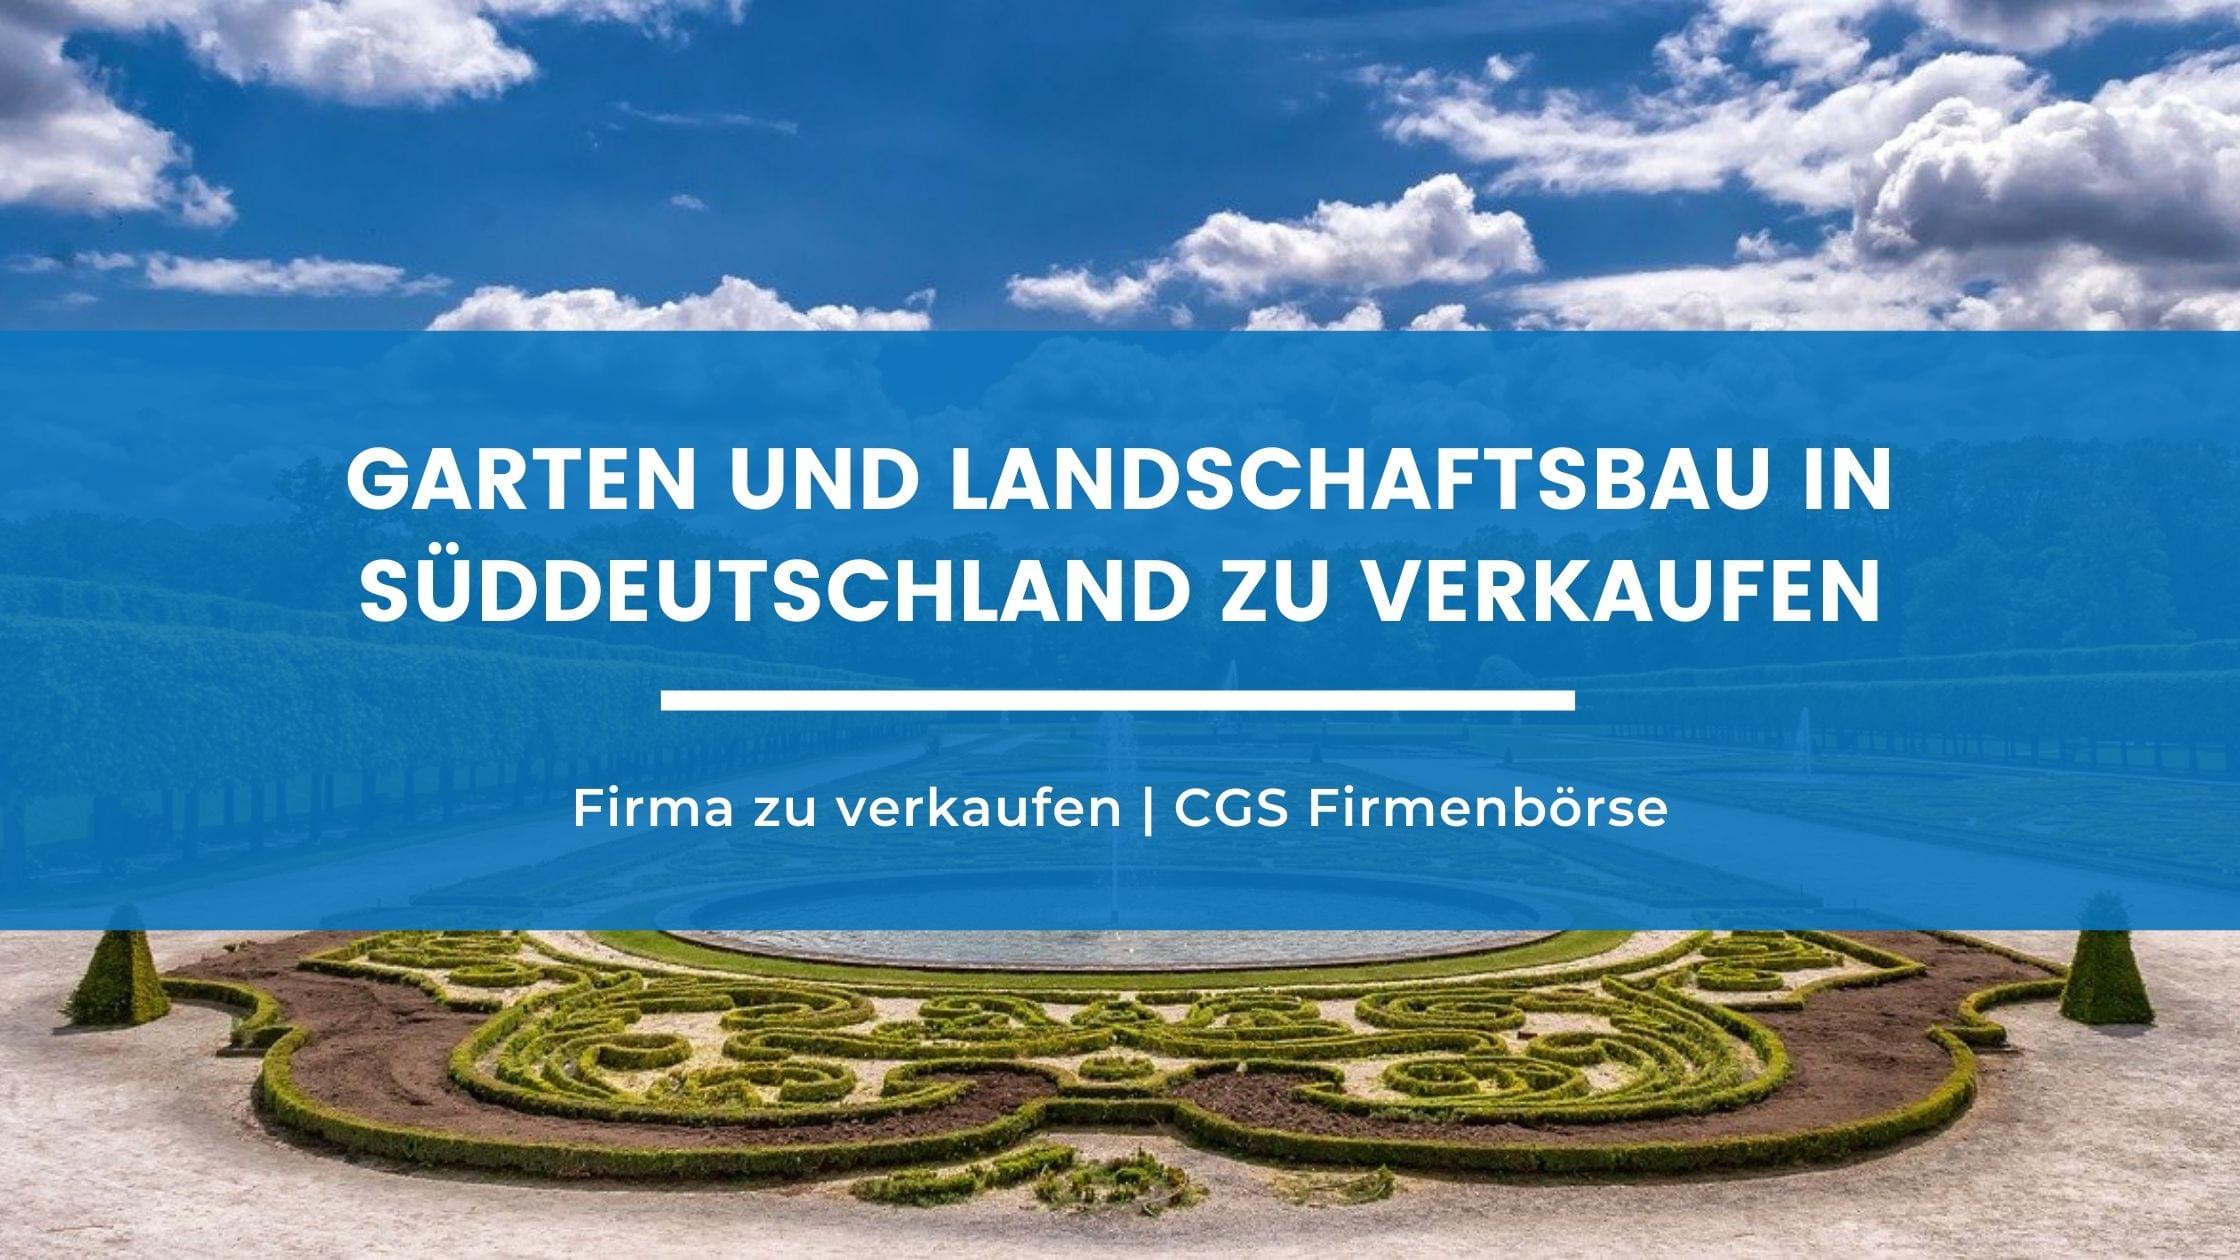 Garten und Landschaftsbau in Süddeutschland zu verkaufen